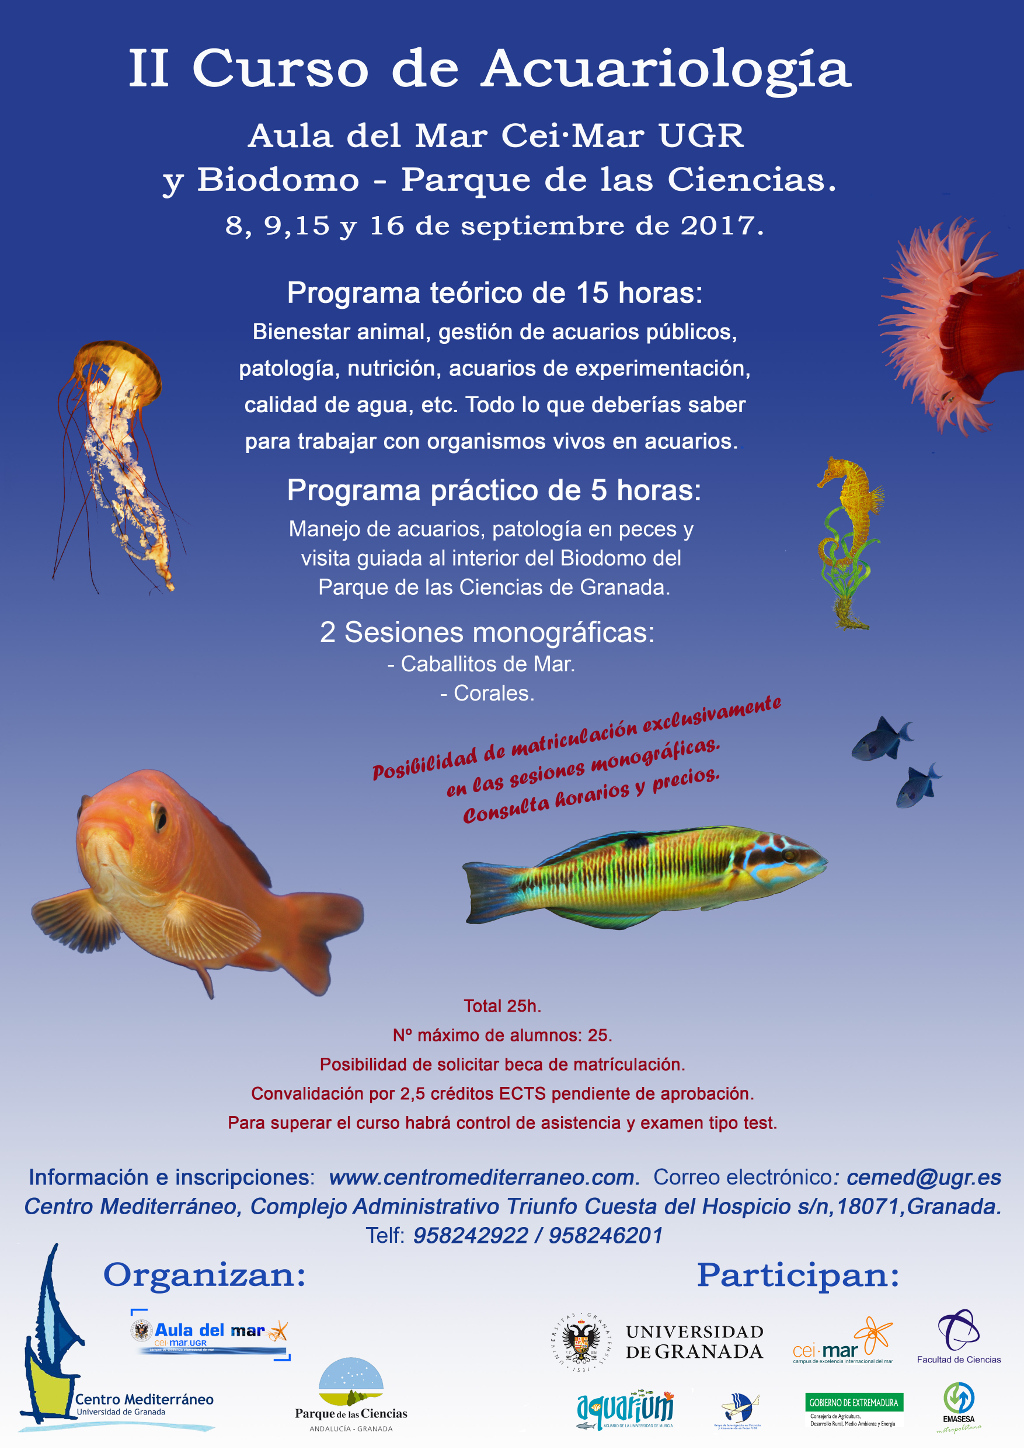 II Curso de Acariología del Aula del Mar Cei·Mar UGR - Biodomo 